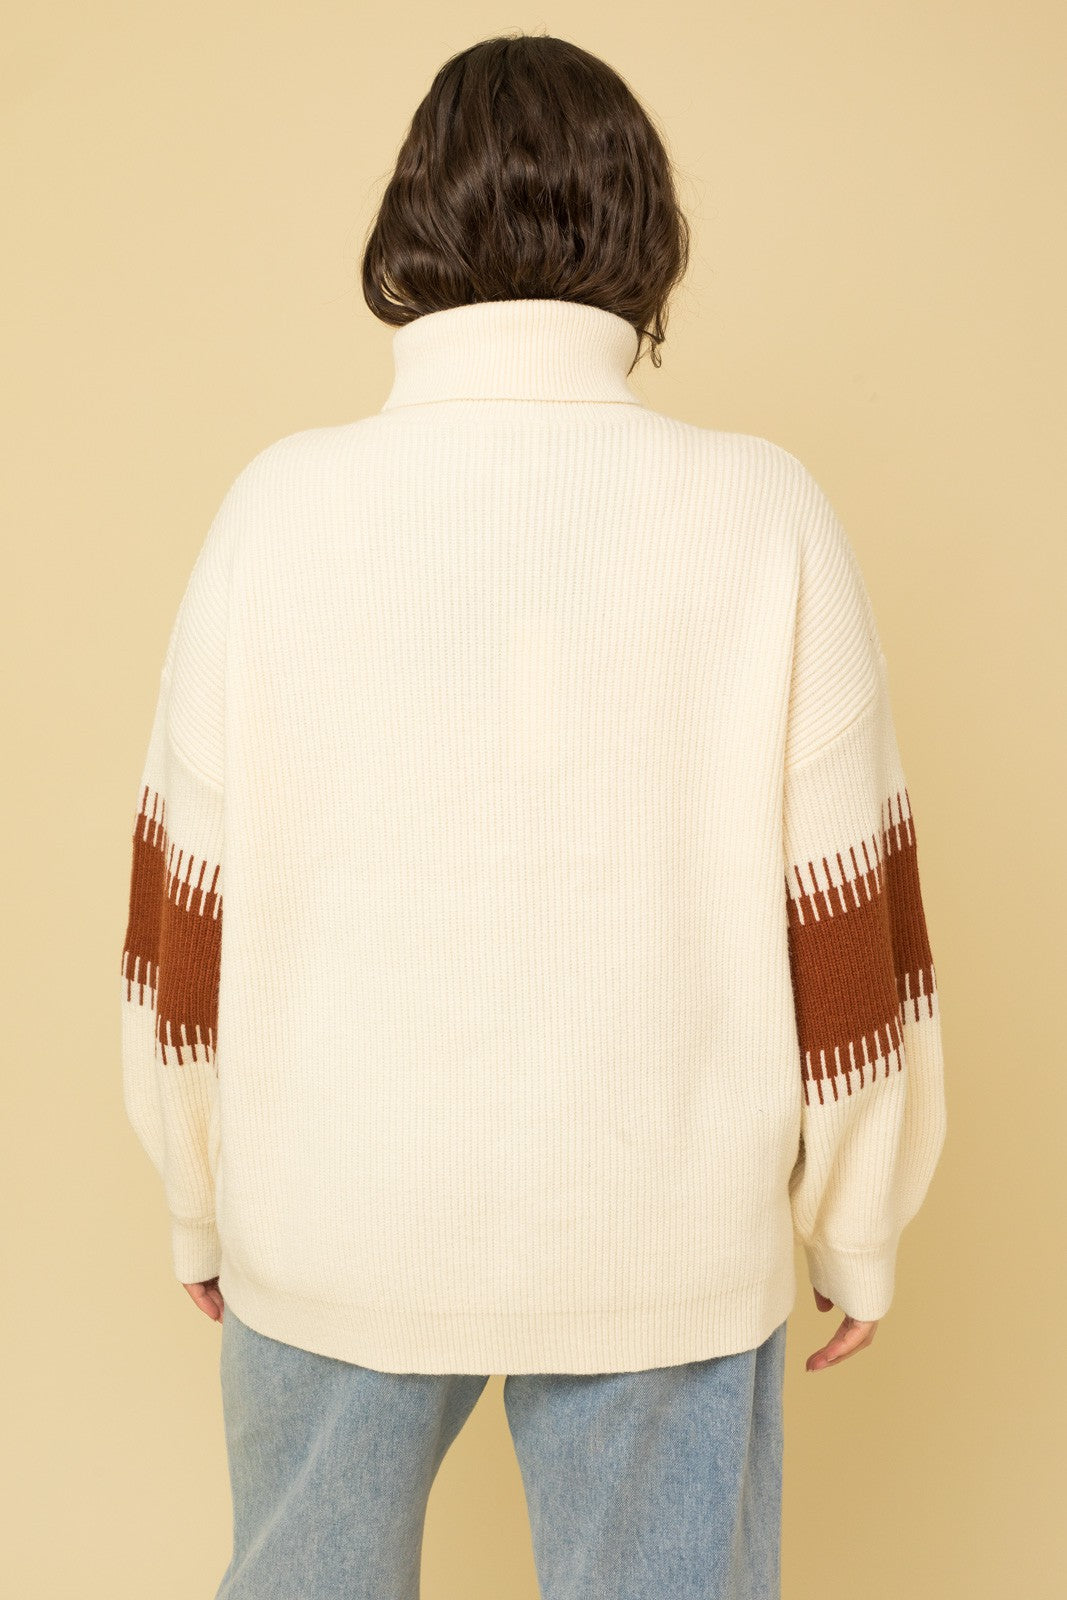 Plus Size Contrast Colorblock Turtleneck Sweater